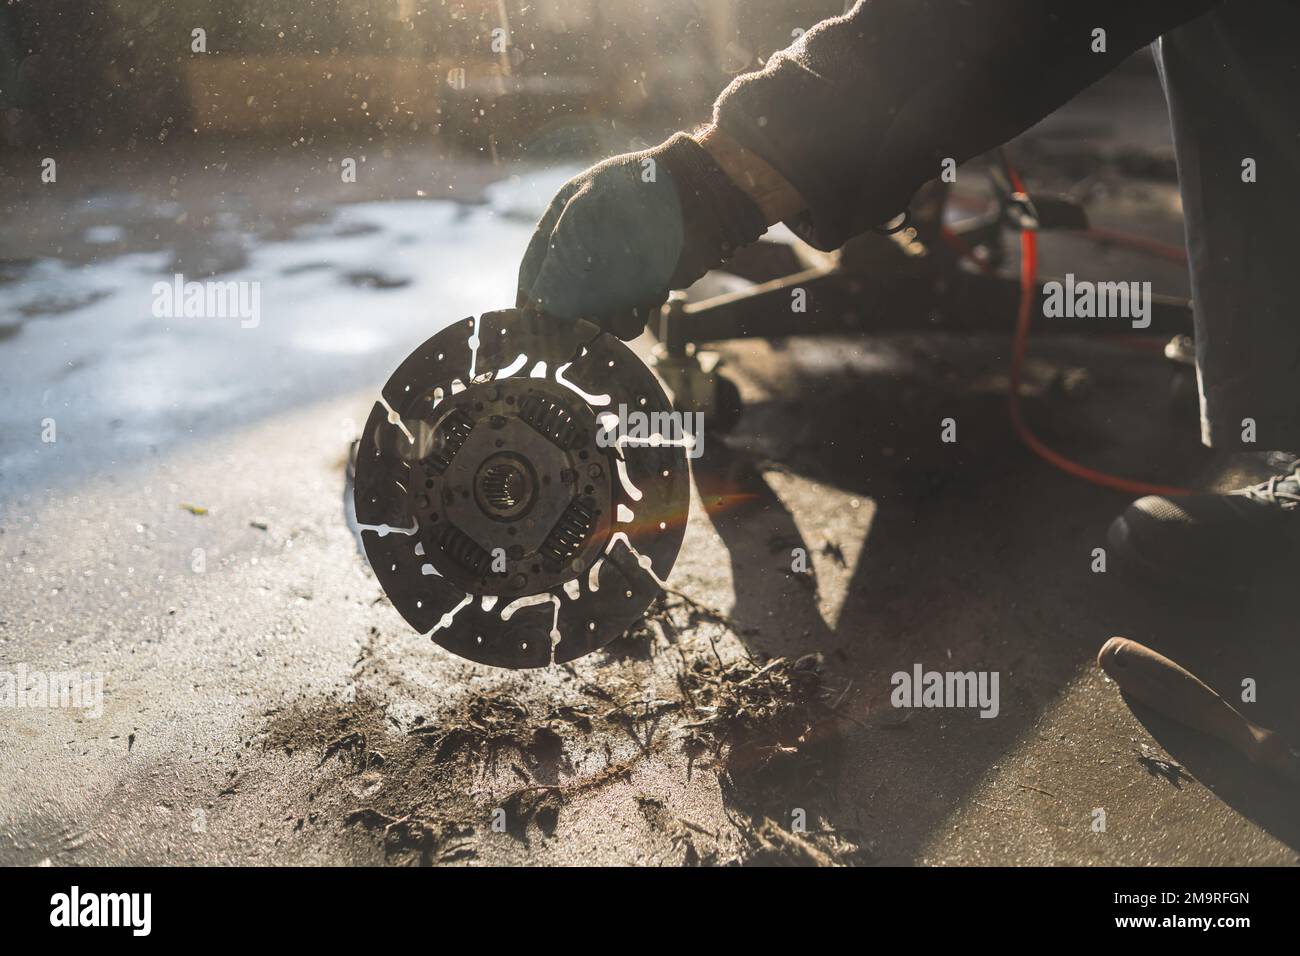 Mani di meccanico che tiene una vecchia frizione grigia argento rotta ad un negozio di riparazione auto. Foto di alta qualità Foto Stock